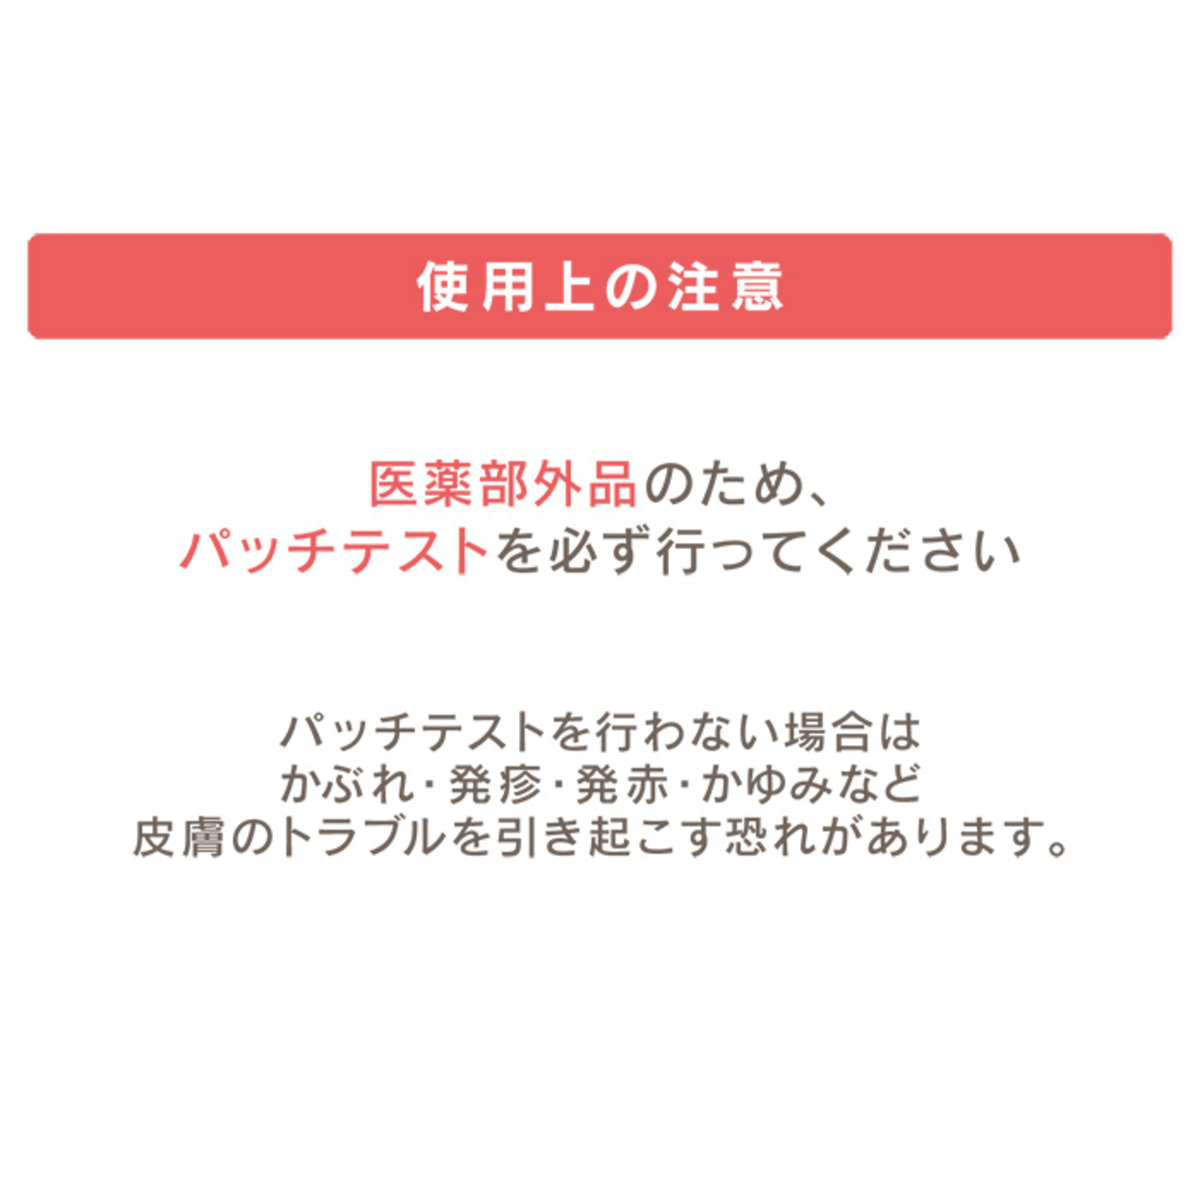 マルベール ロイヤルカラー アミノプラス 3箱セット - QVC.jp